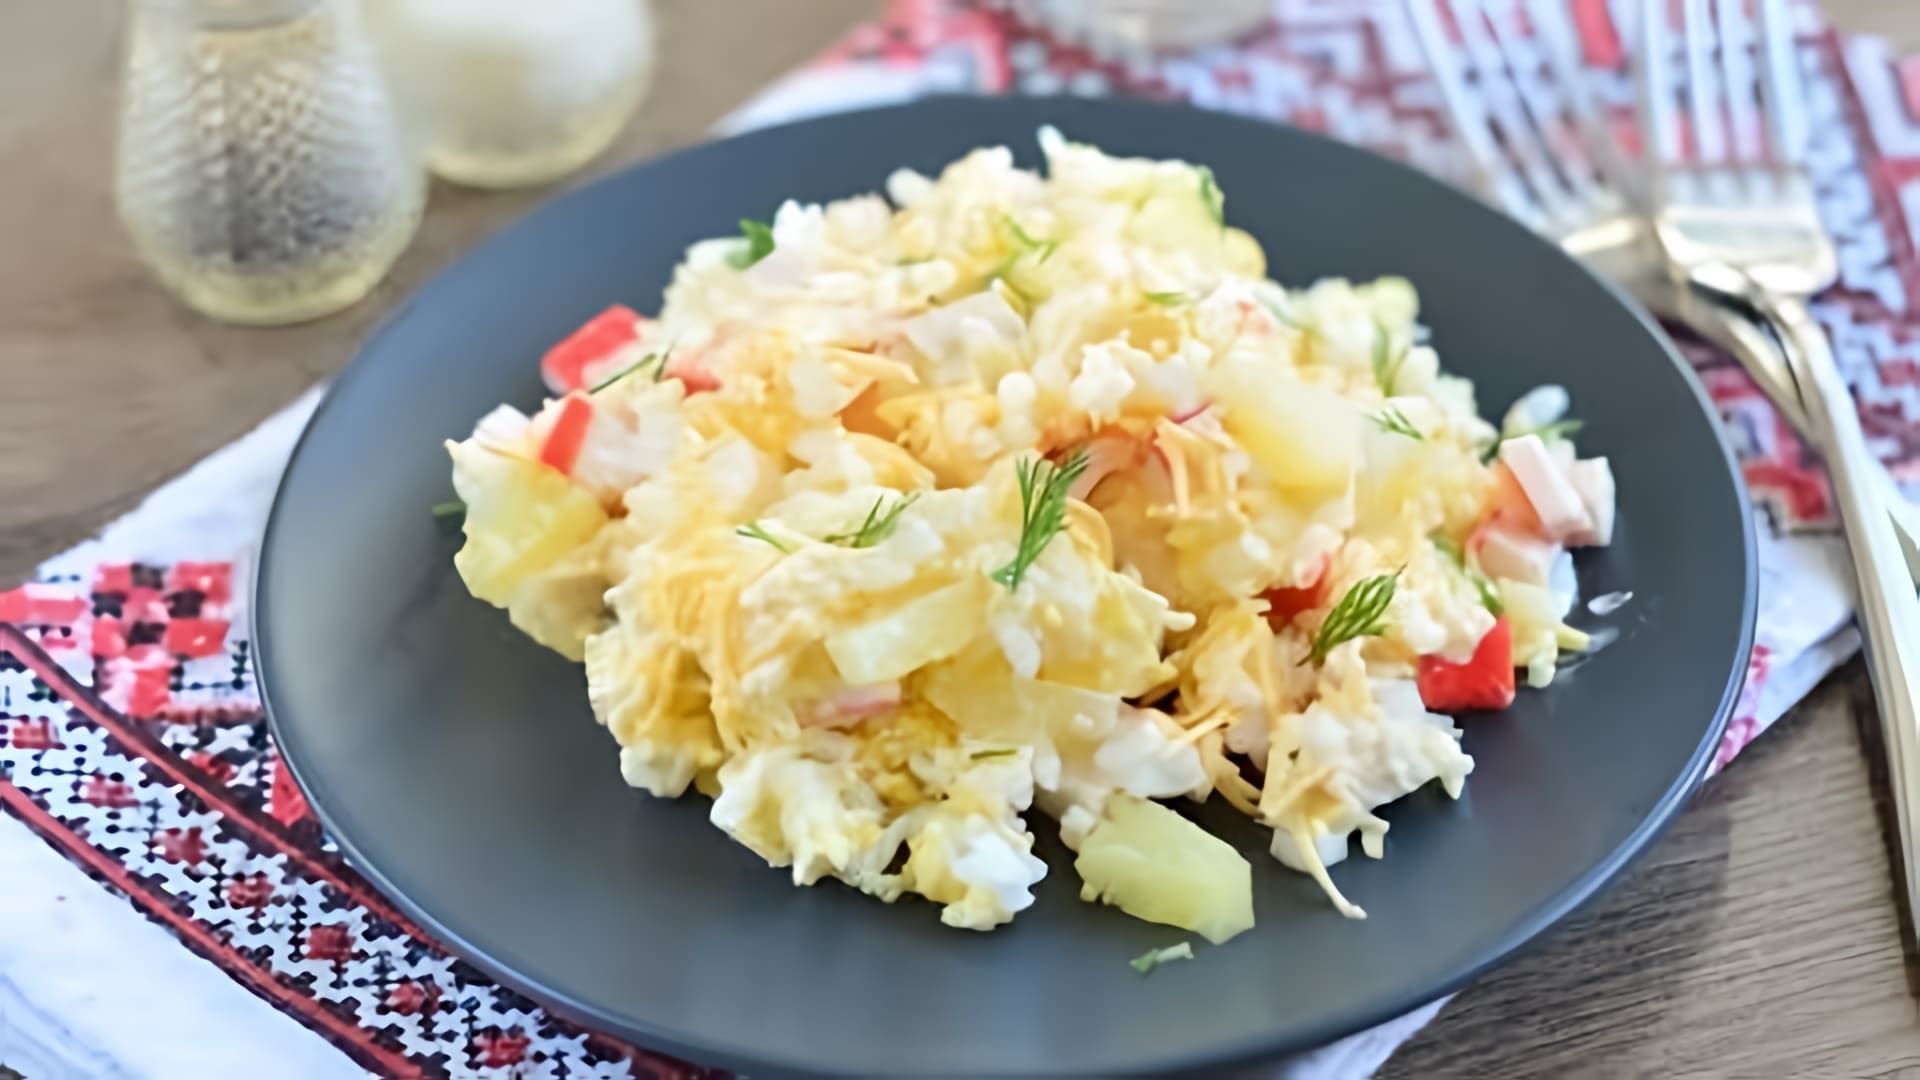 В этом видео демонстрируется рецепт крабового салата с ананасом и рисом